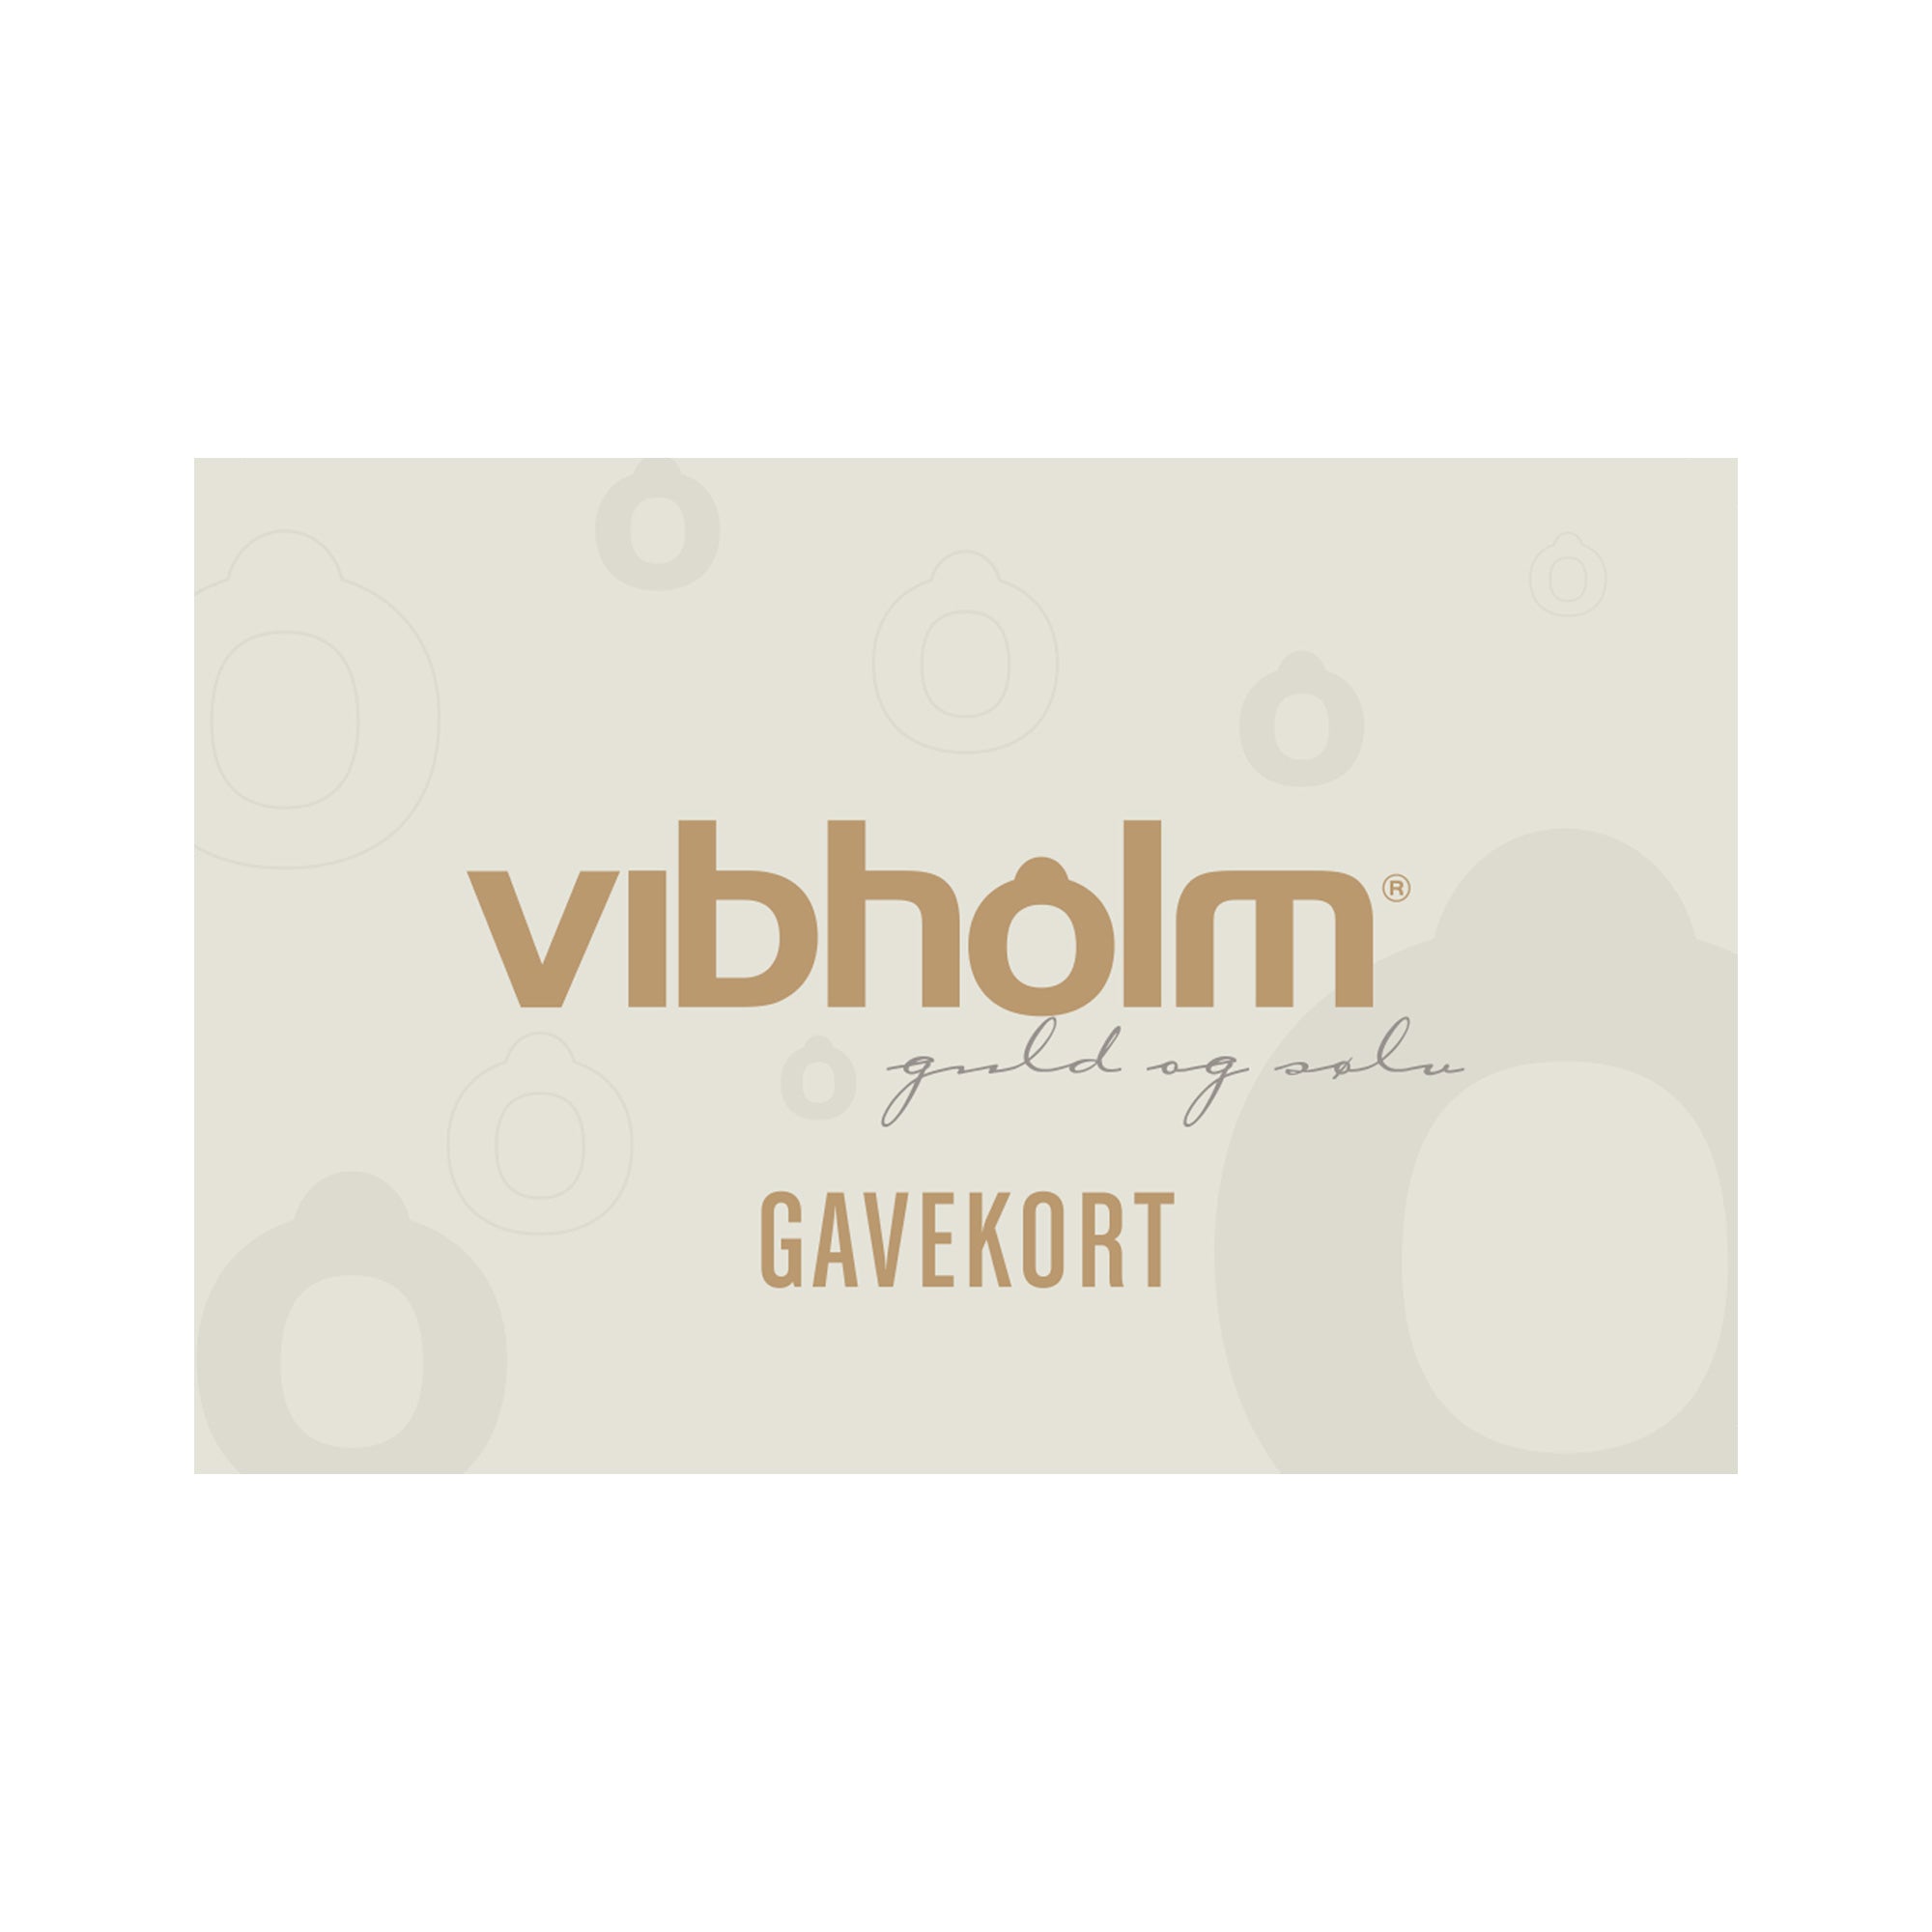 Se Vibholm gavekort 2000 kr. hos Vibholm.dk